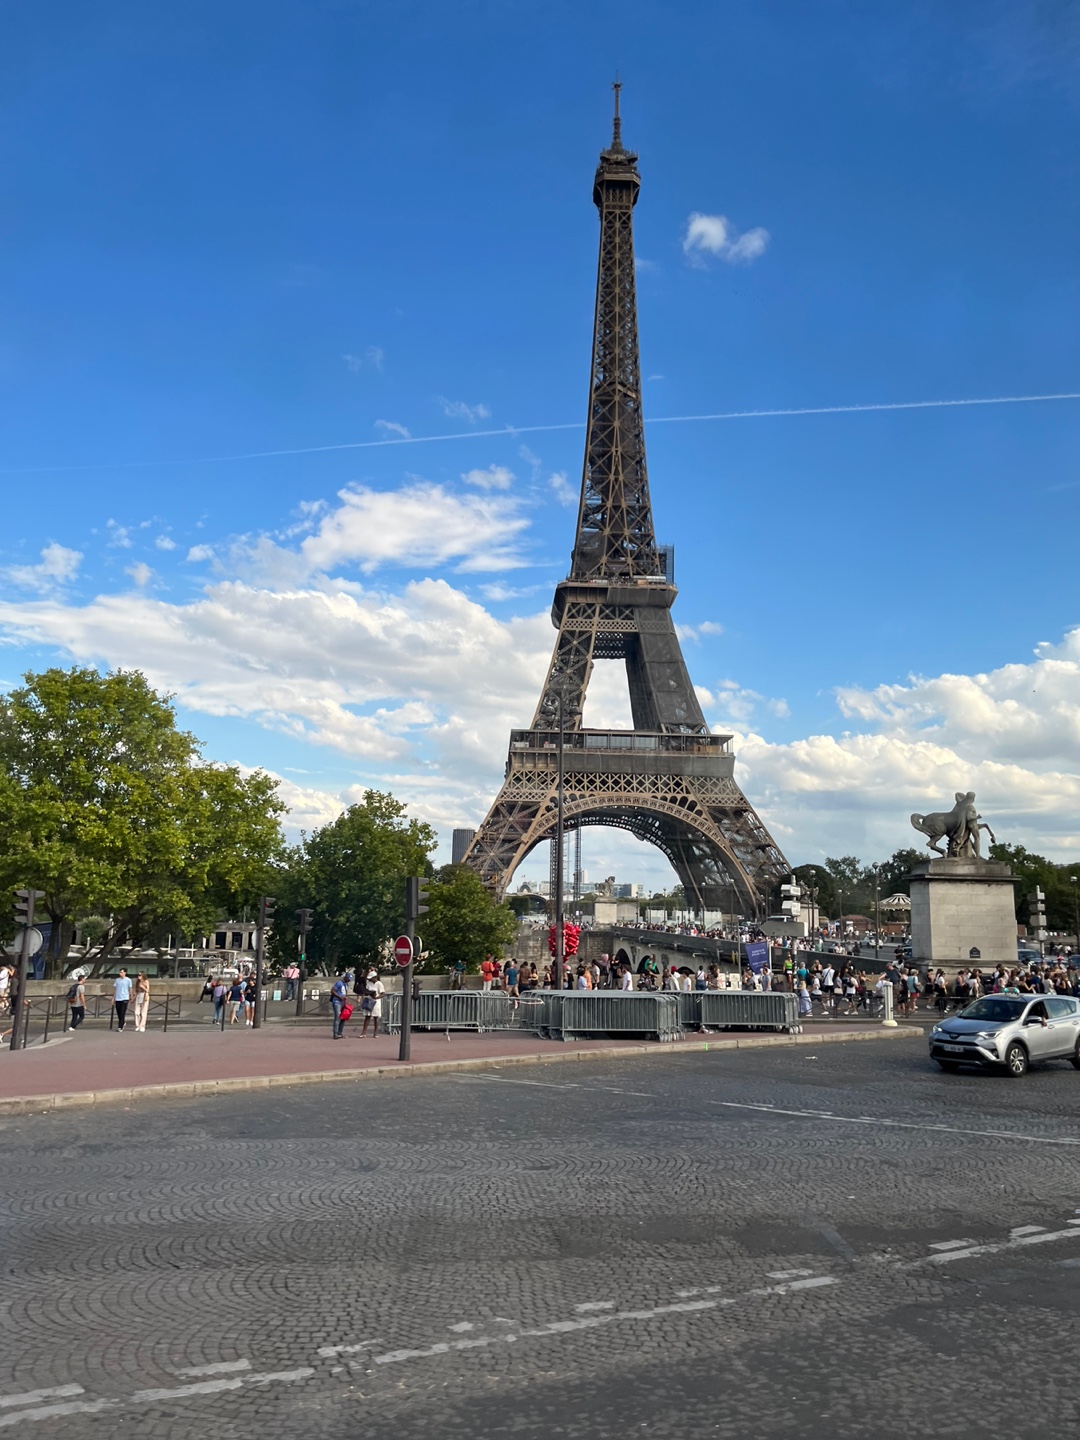 버스로 이동하면서 바라본 에펠탑 모습(2)